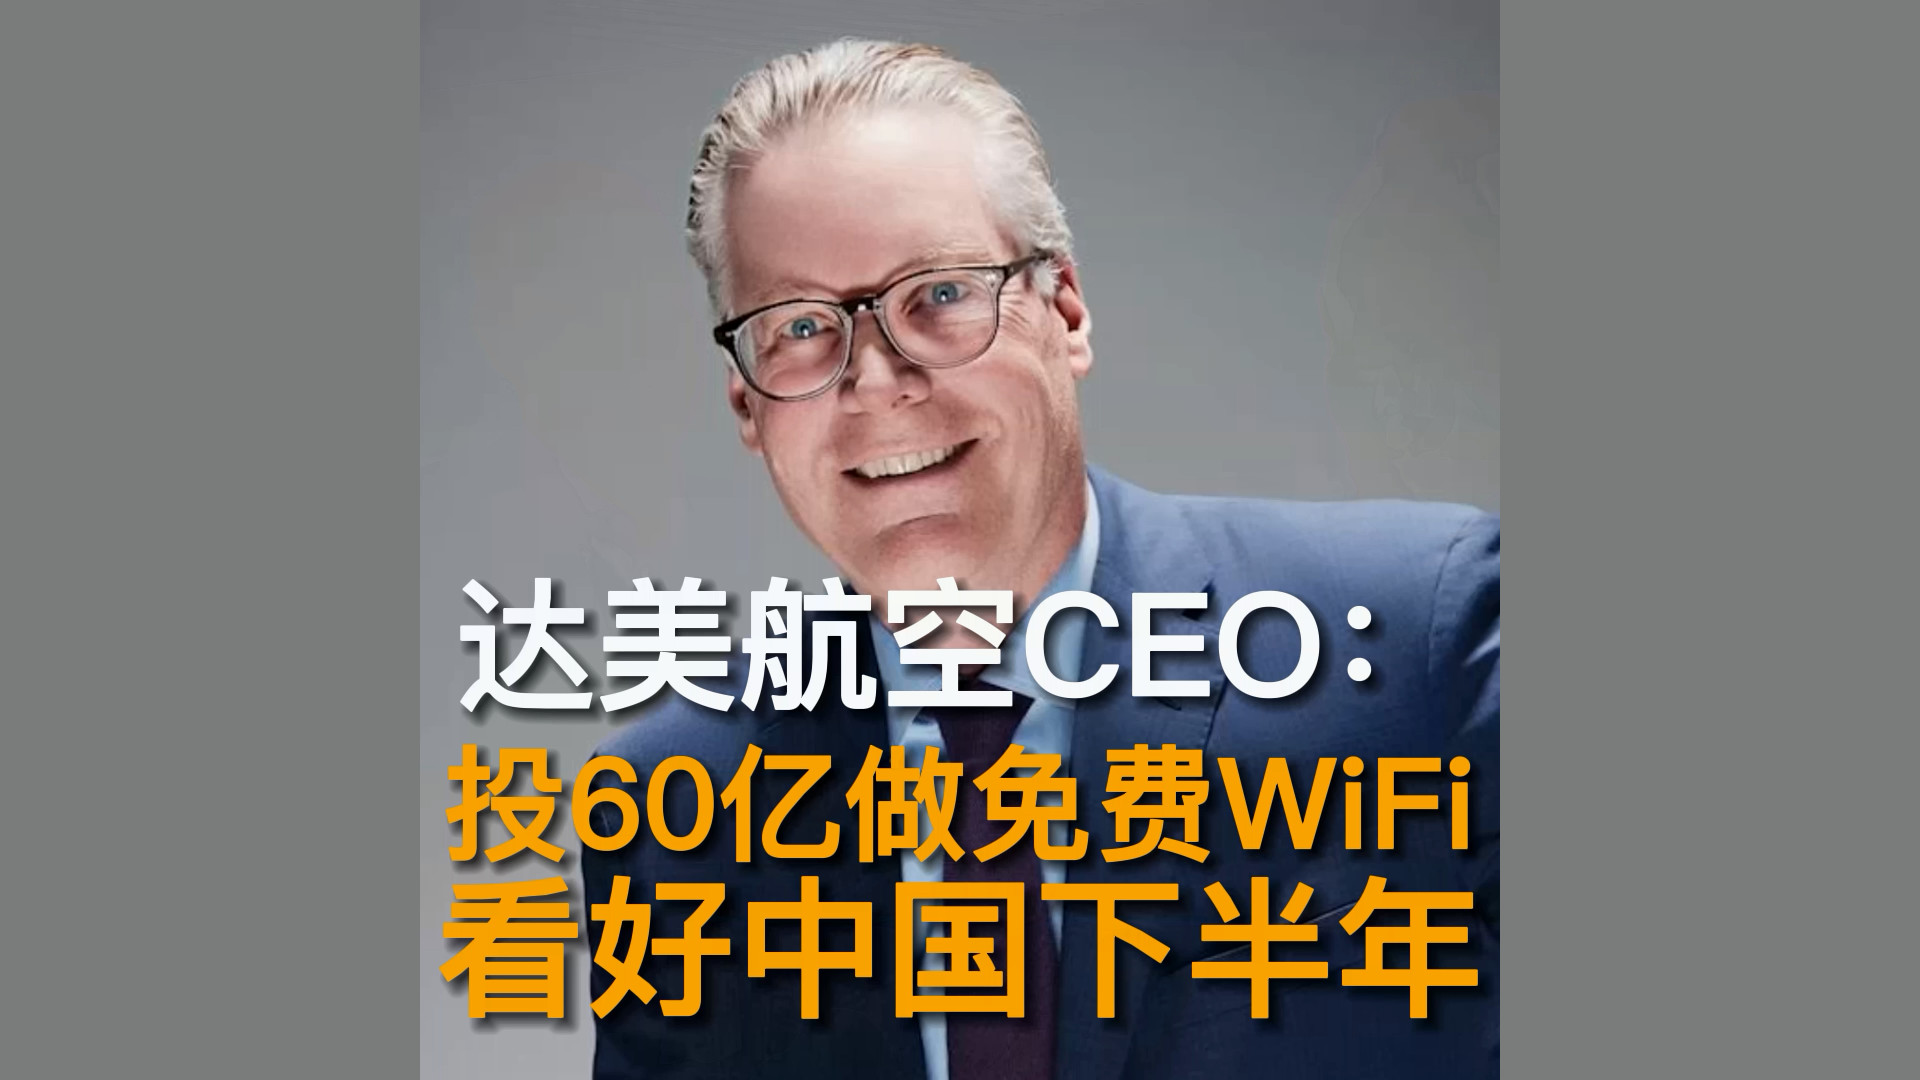 达美航空CEO： 投60亿做免费WiFi 看好中国下半年